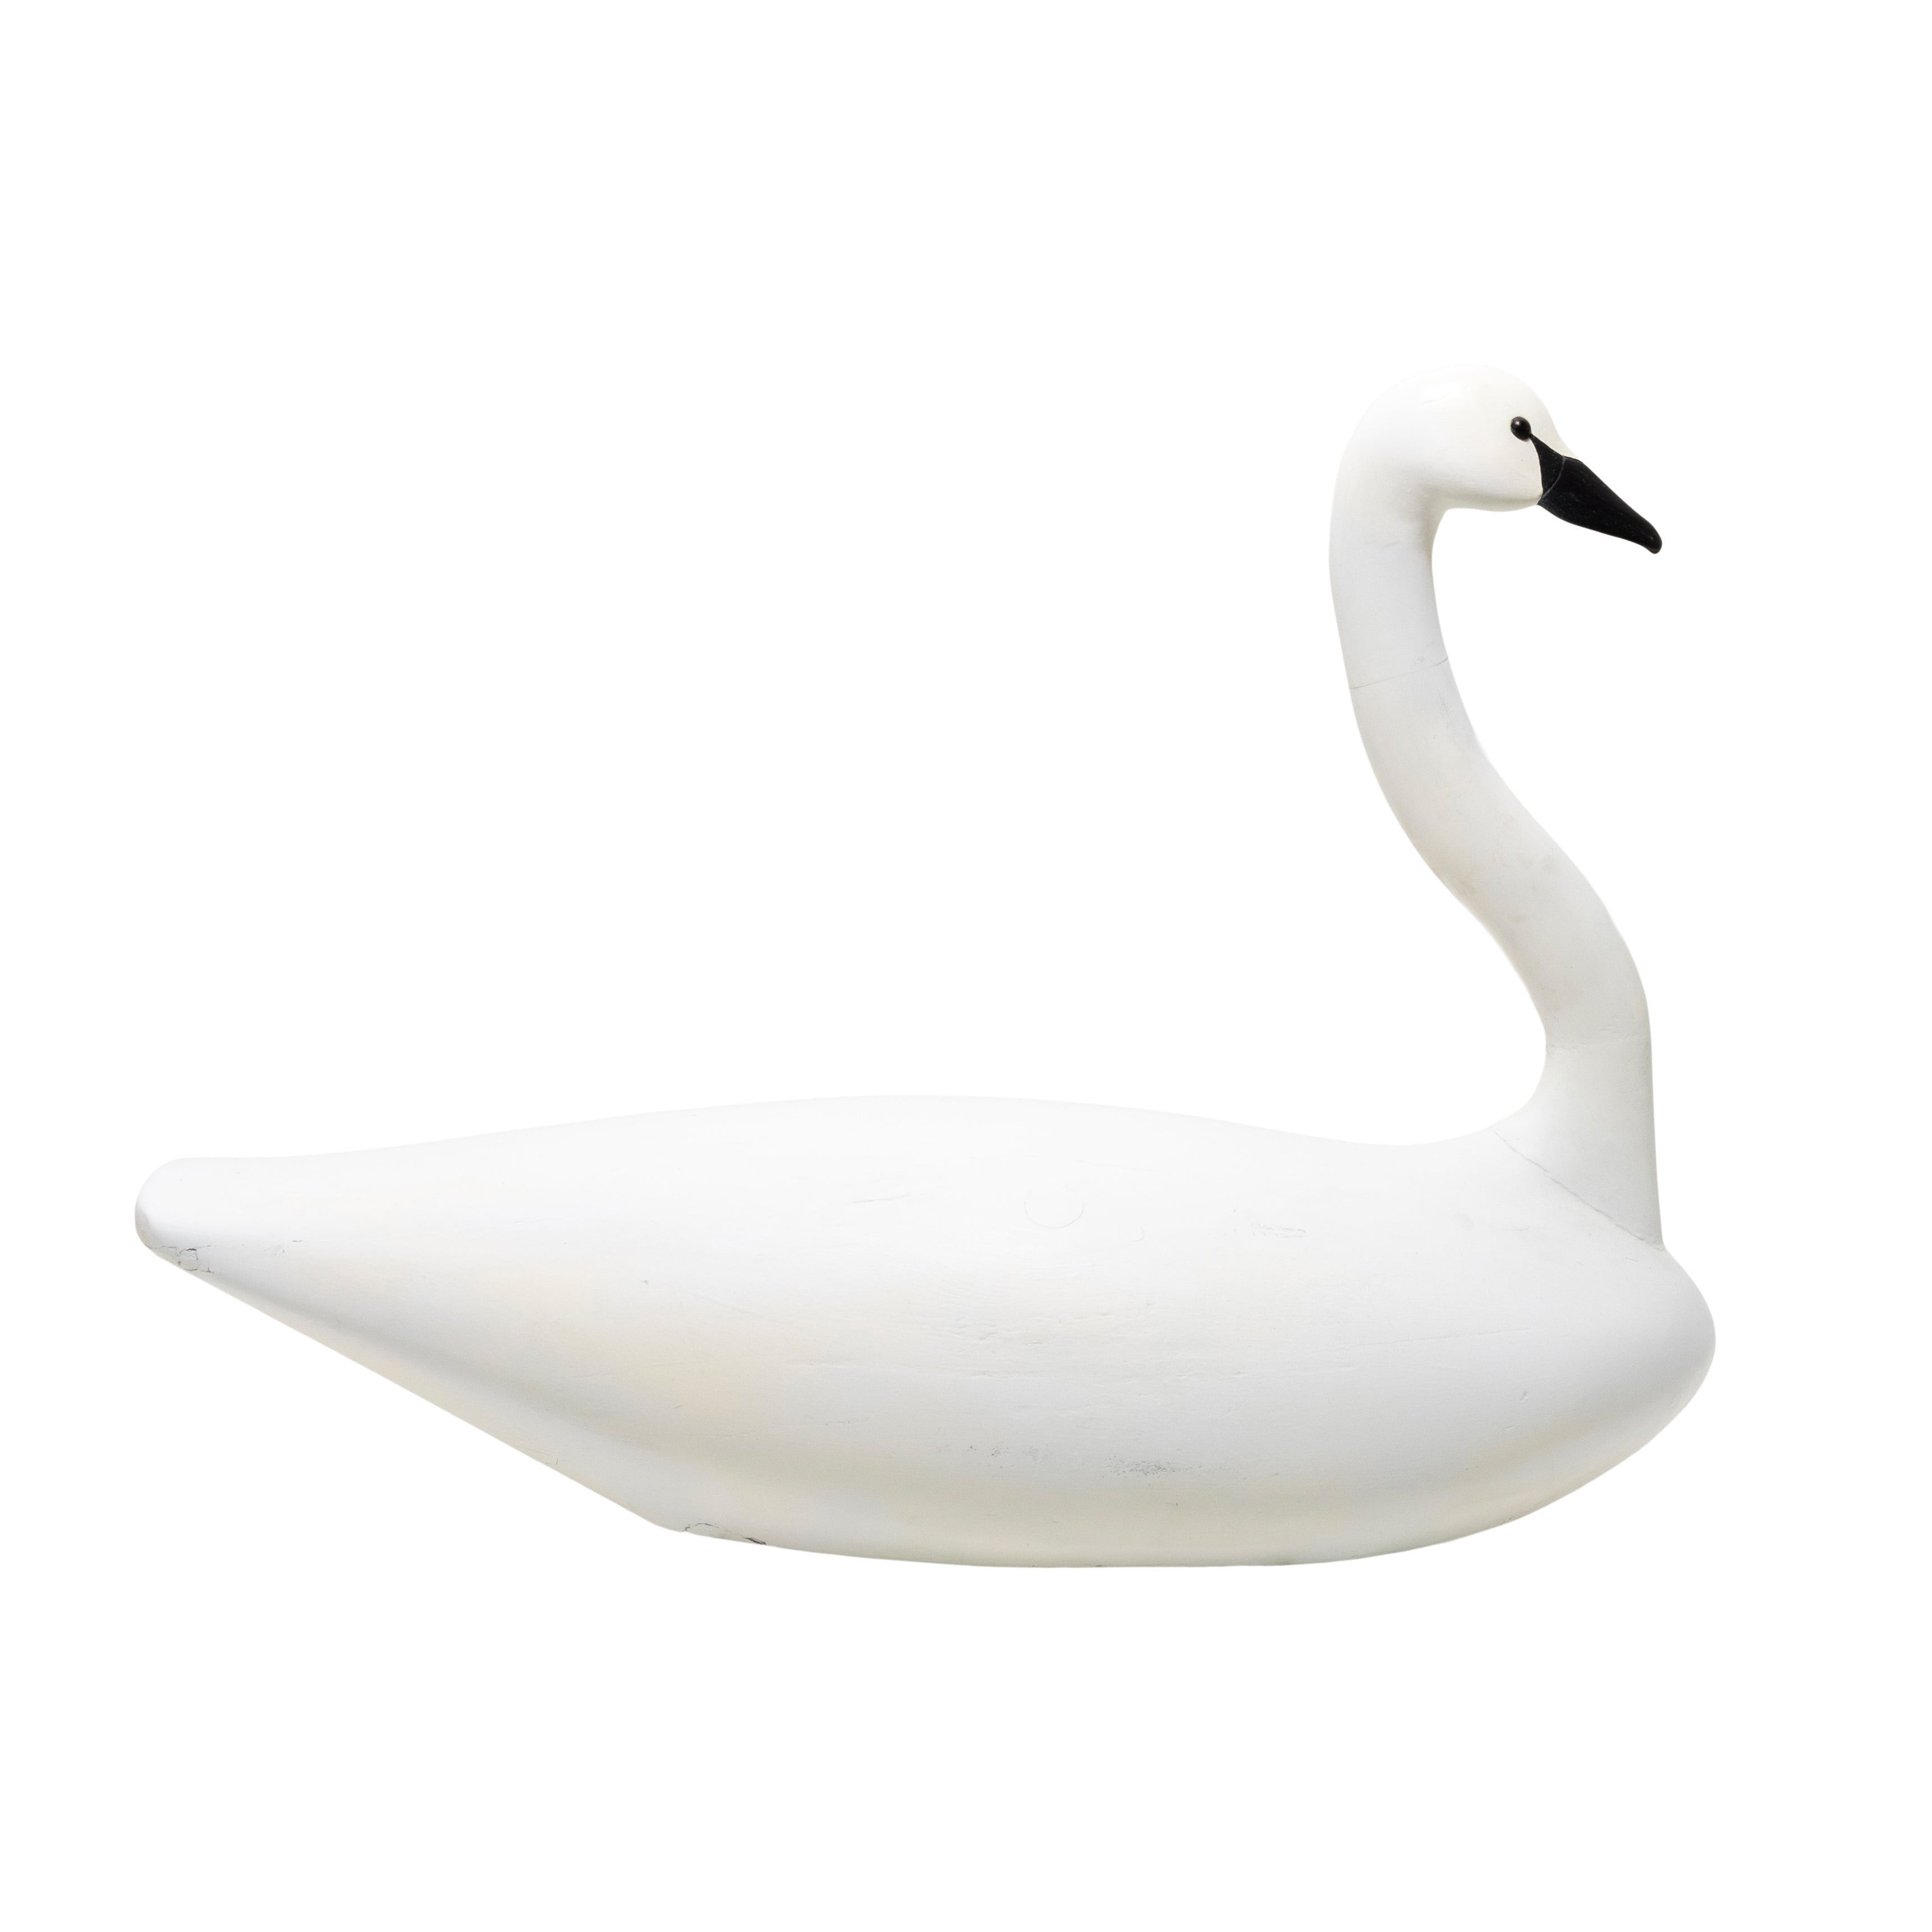 Swan Decoy by Paul Gibson